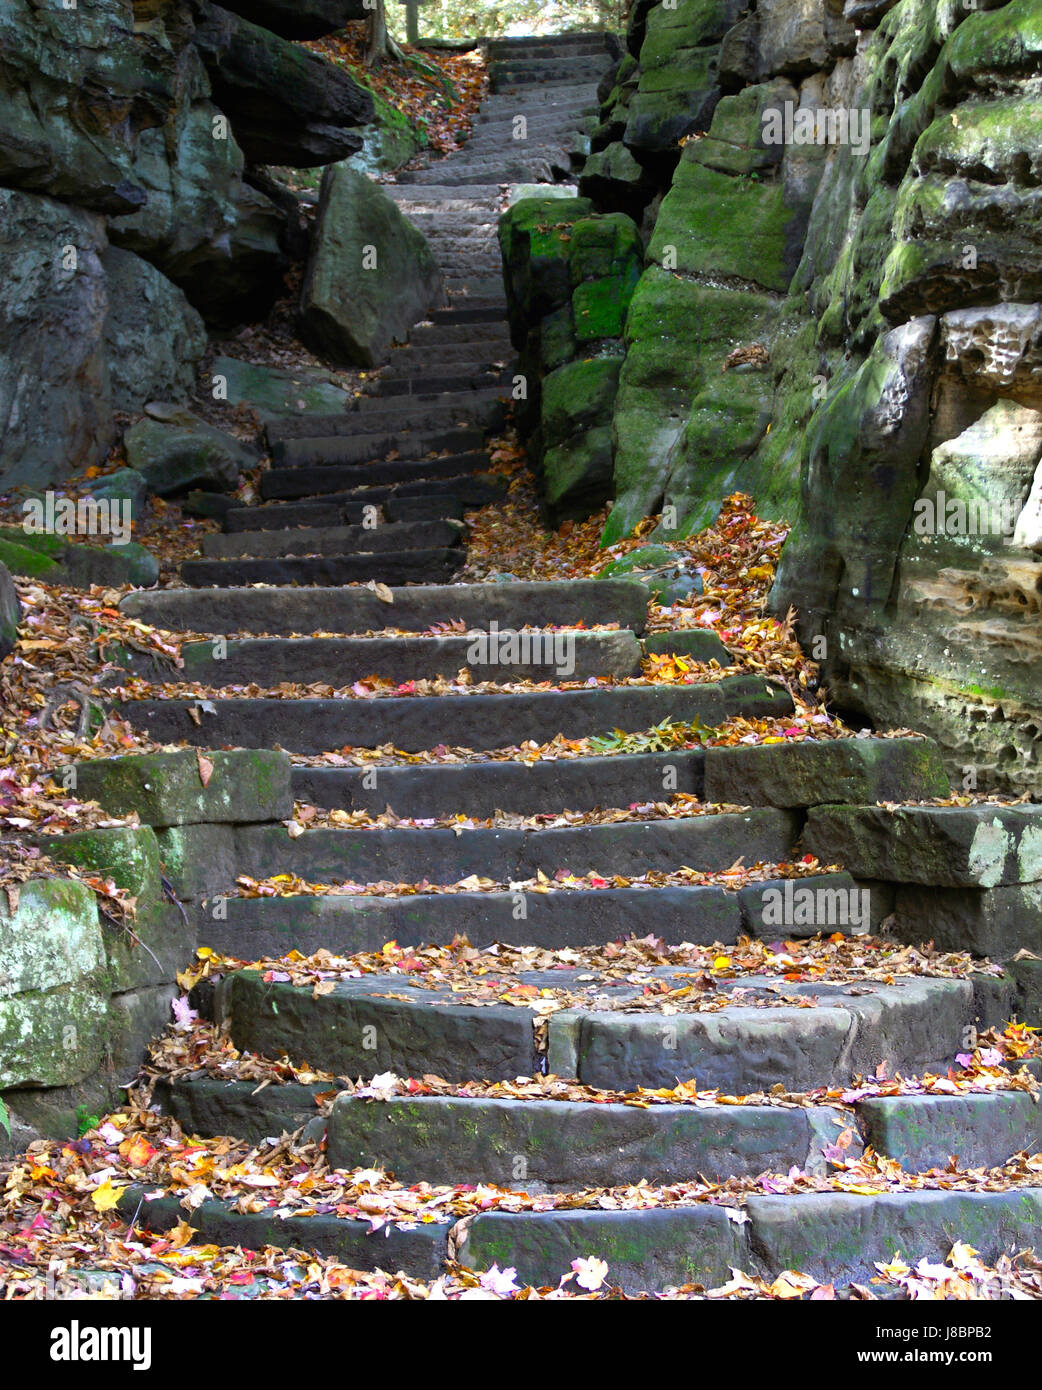 Escaliers, pierre, raide, sinueux, automne, automne, marches, escaliers, feuille, pierre, vert, Banque D'Images